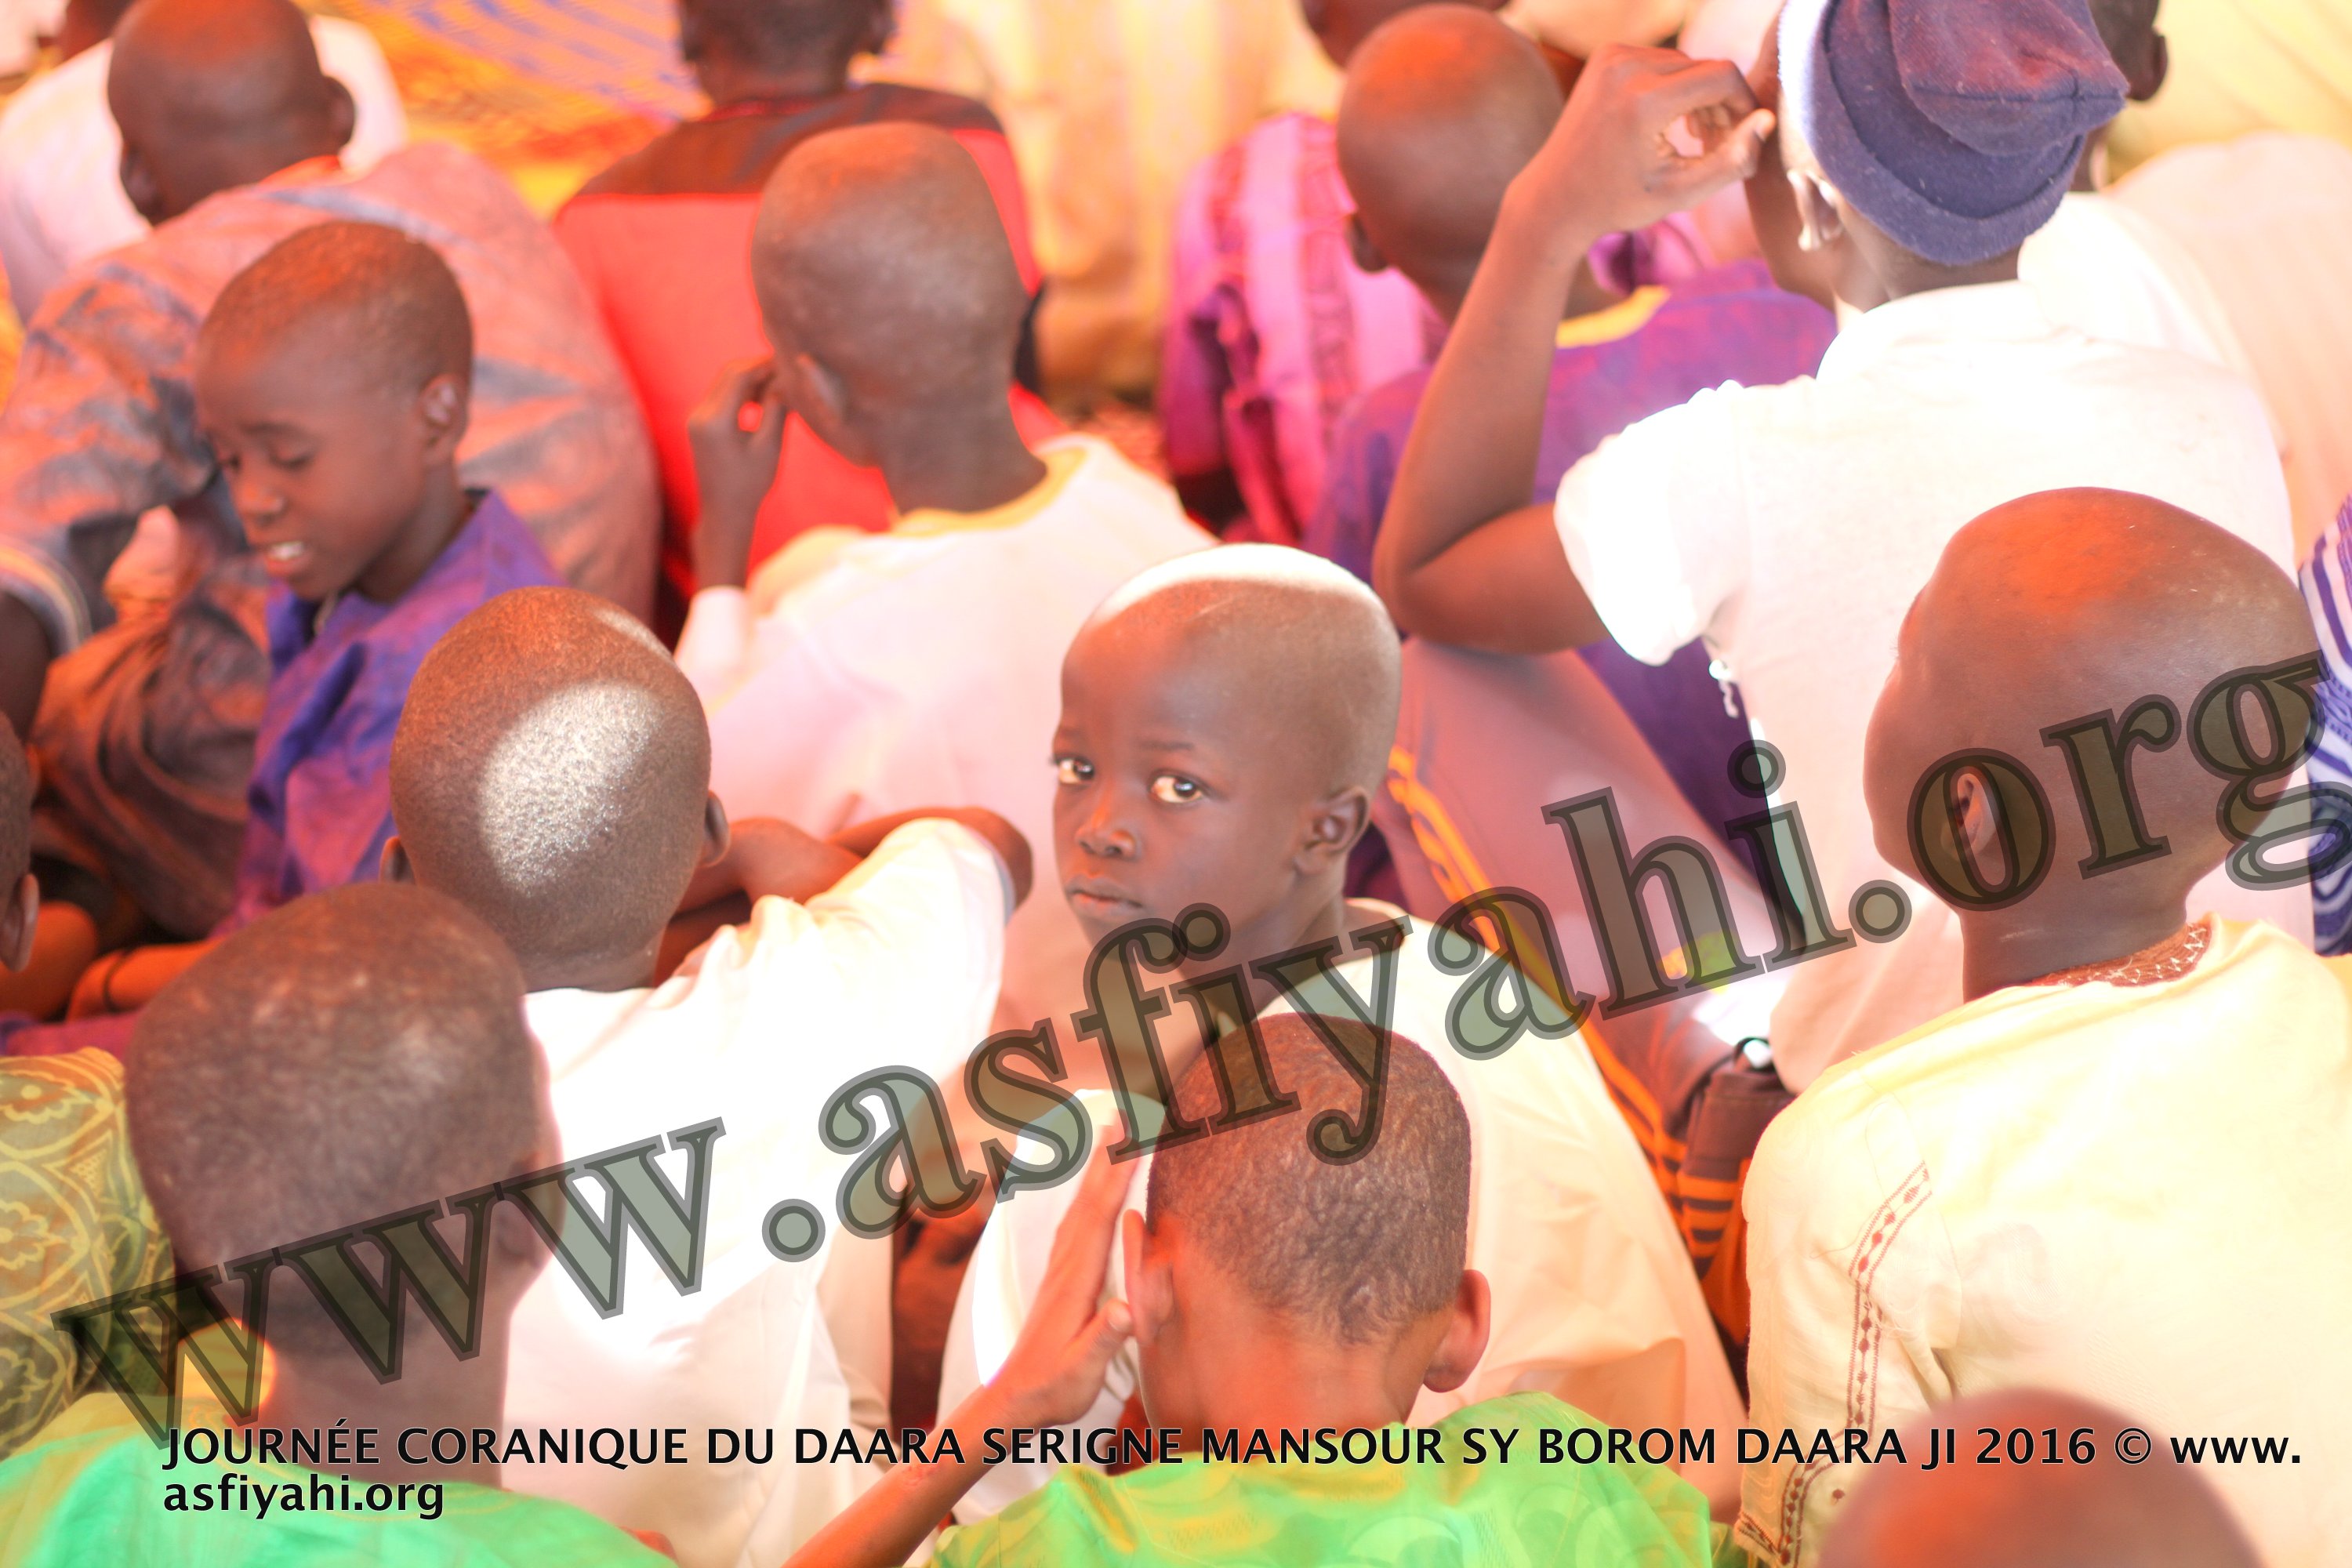 PHOTOS - TIVAOUANE - Les images de la journée du Saint Coran organisée au Daara Serigne Mansour Sy dirigée par Serigne Maodo Sow 